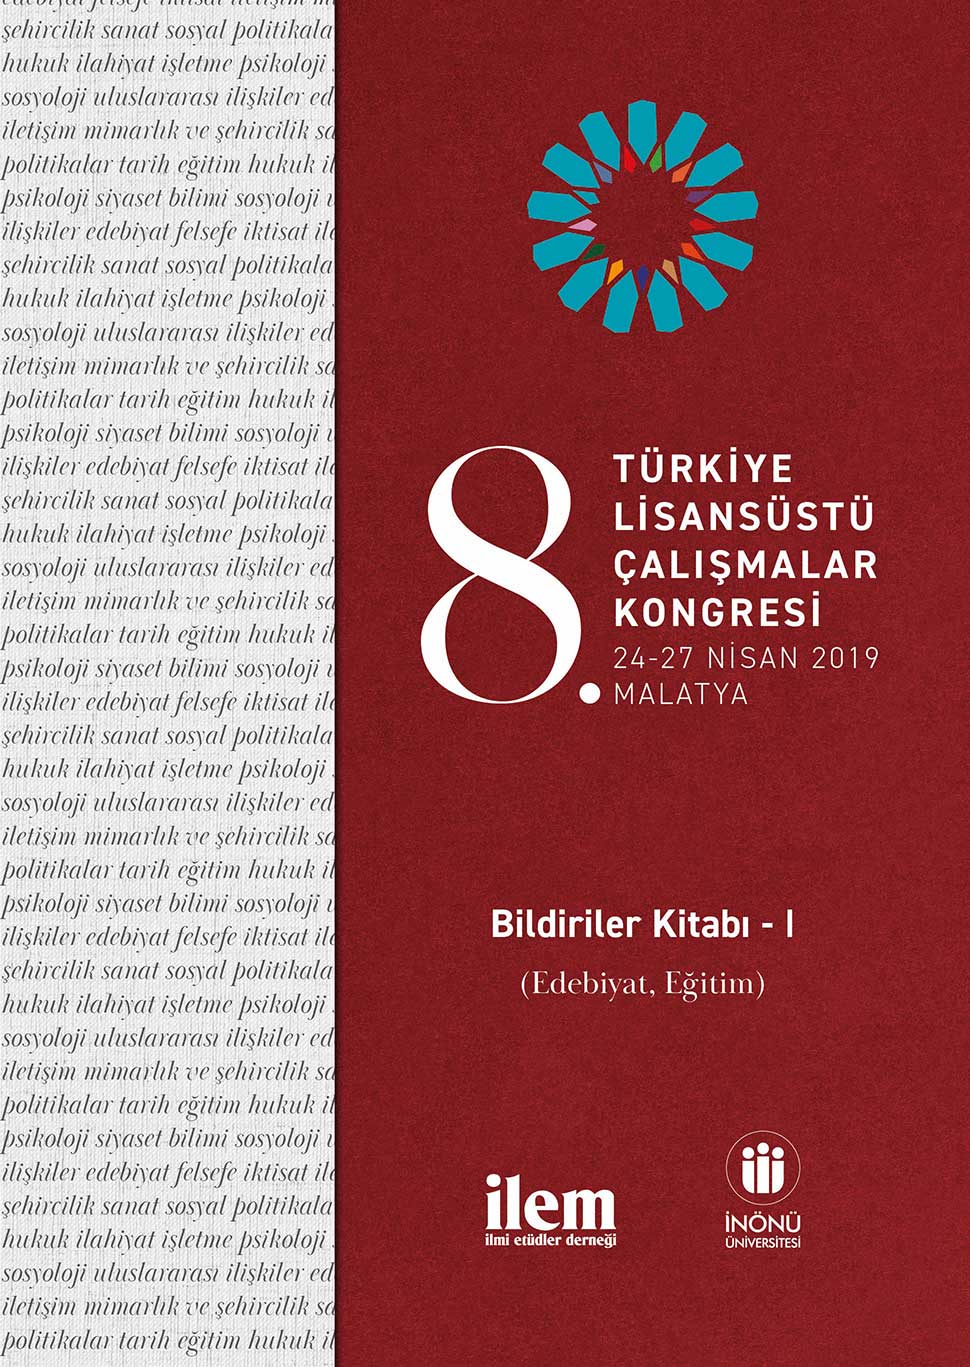 8. Türkiye Lisansüstü Çalışmalar Kongresi Bildiriler Kitabı